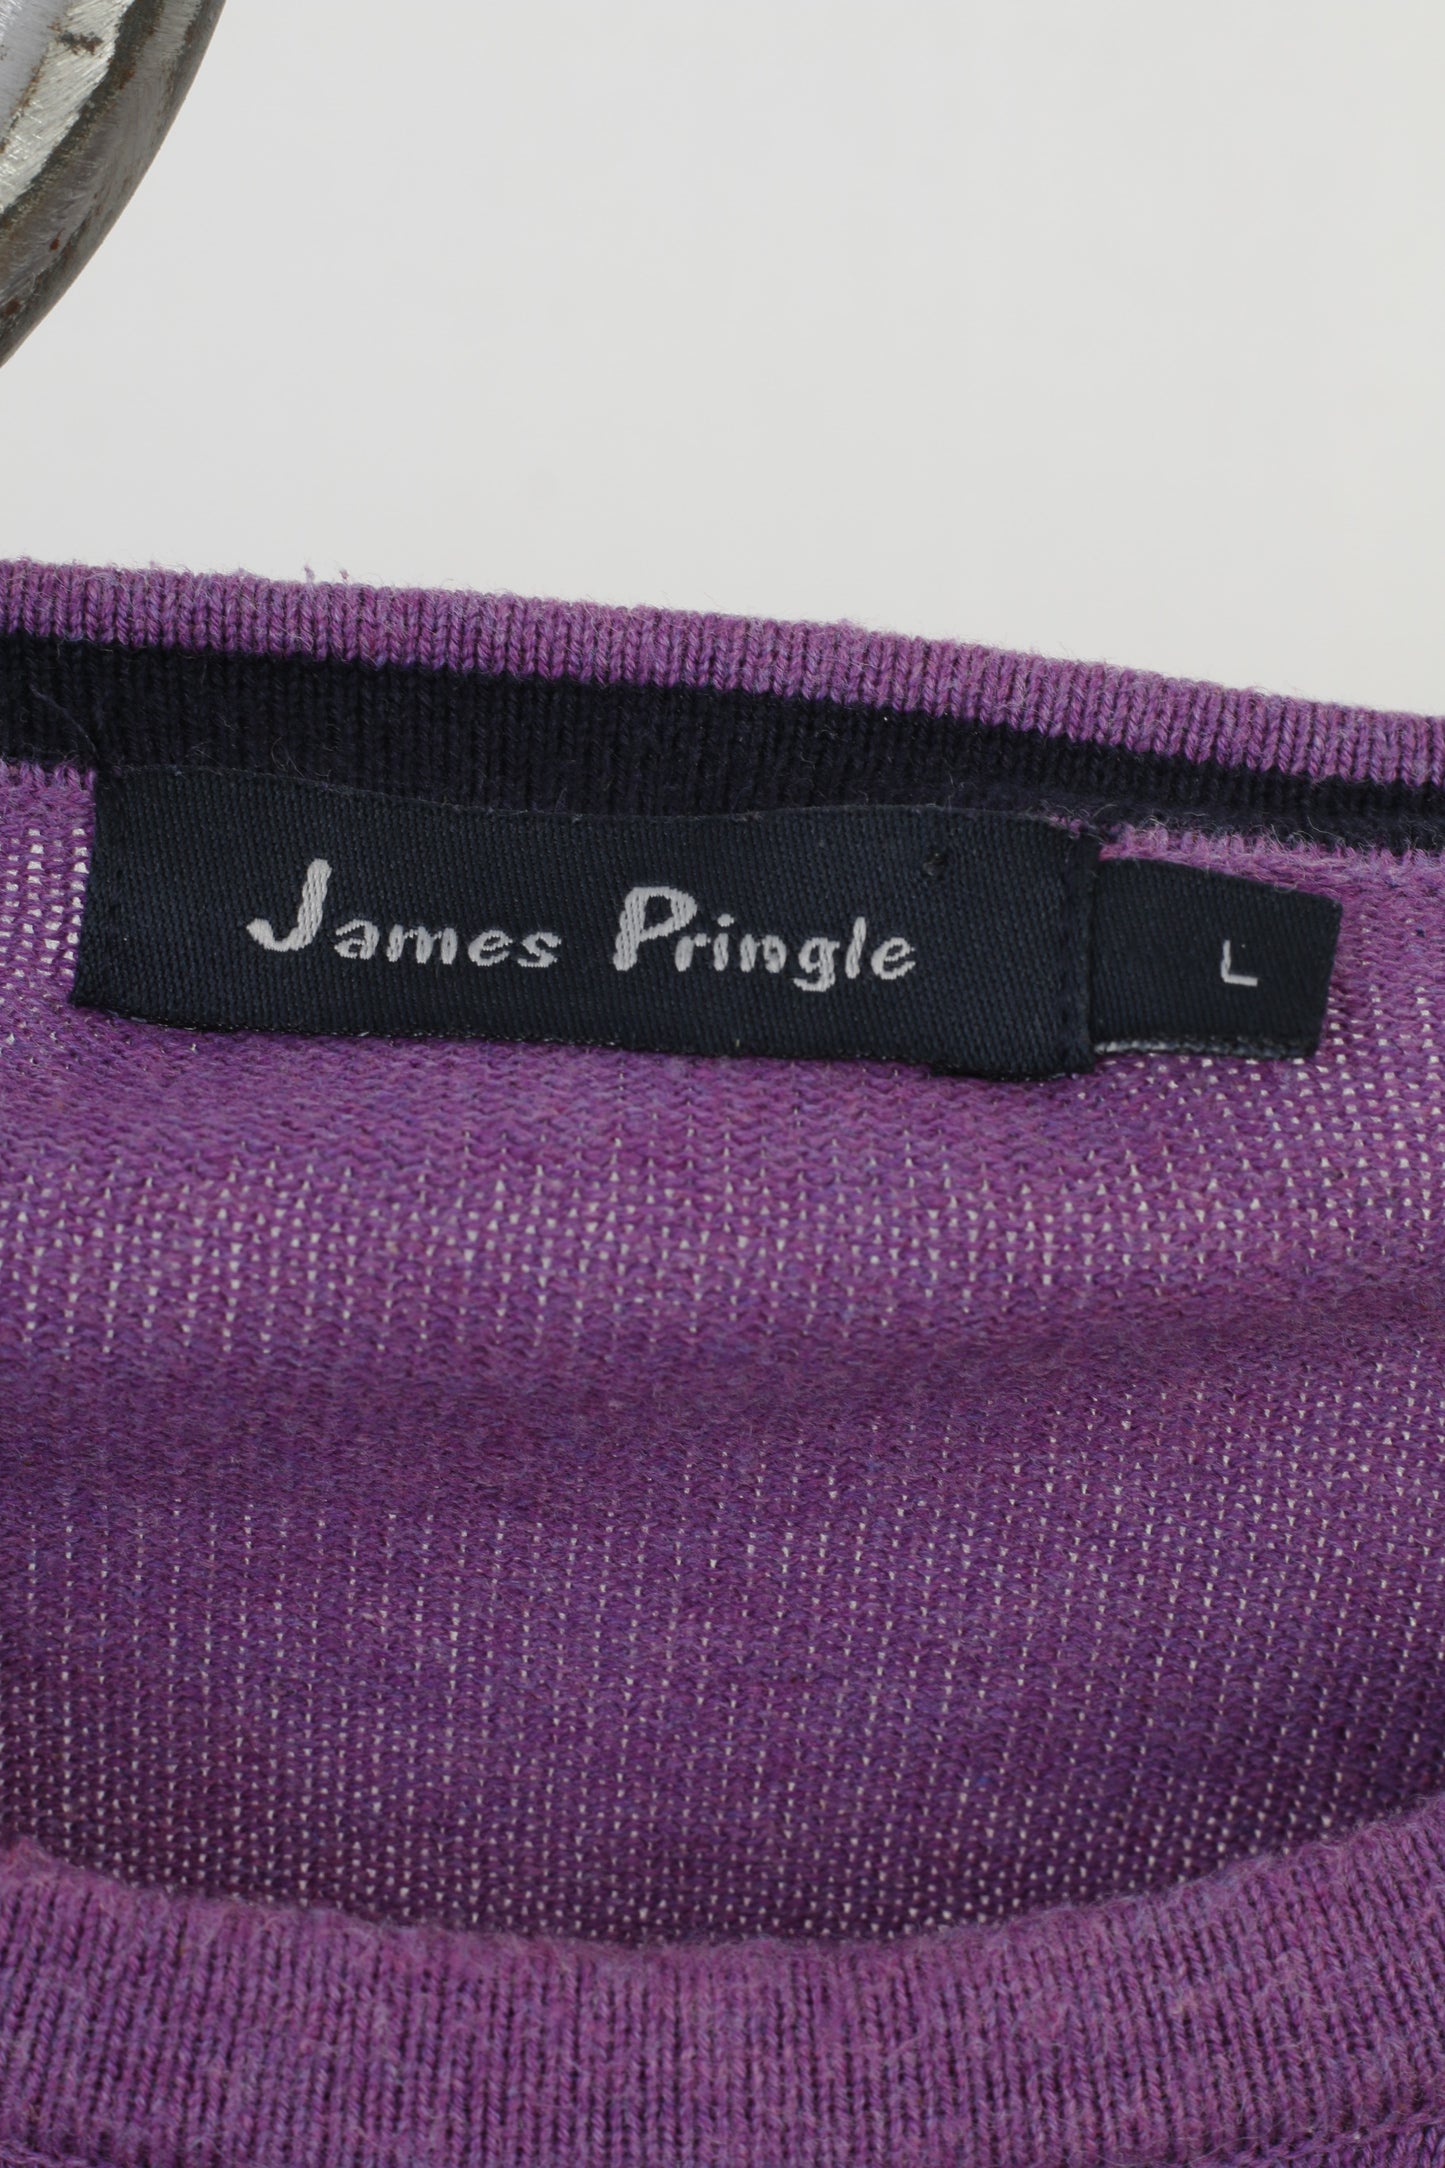 James Pringle Hommes L Jumper Violet Classique Coton Ras Du Cou Vintage Pull Top